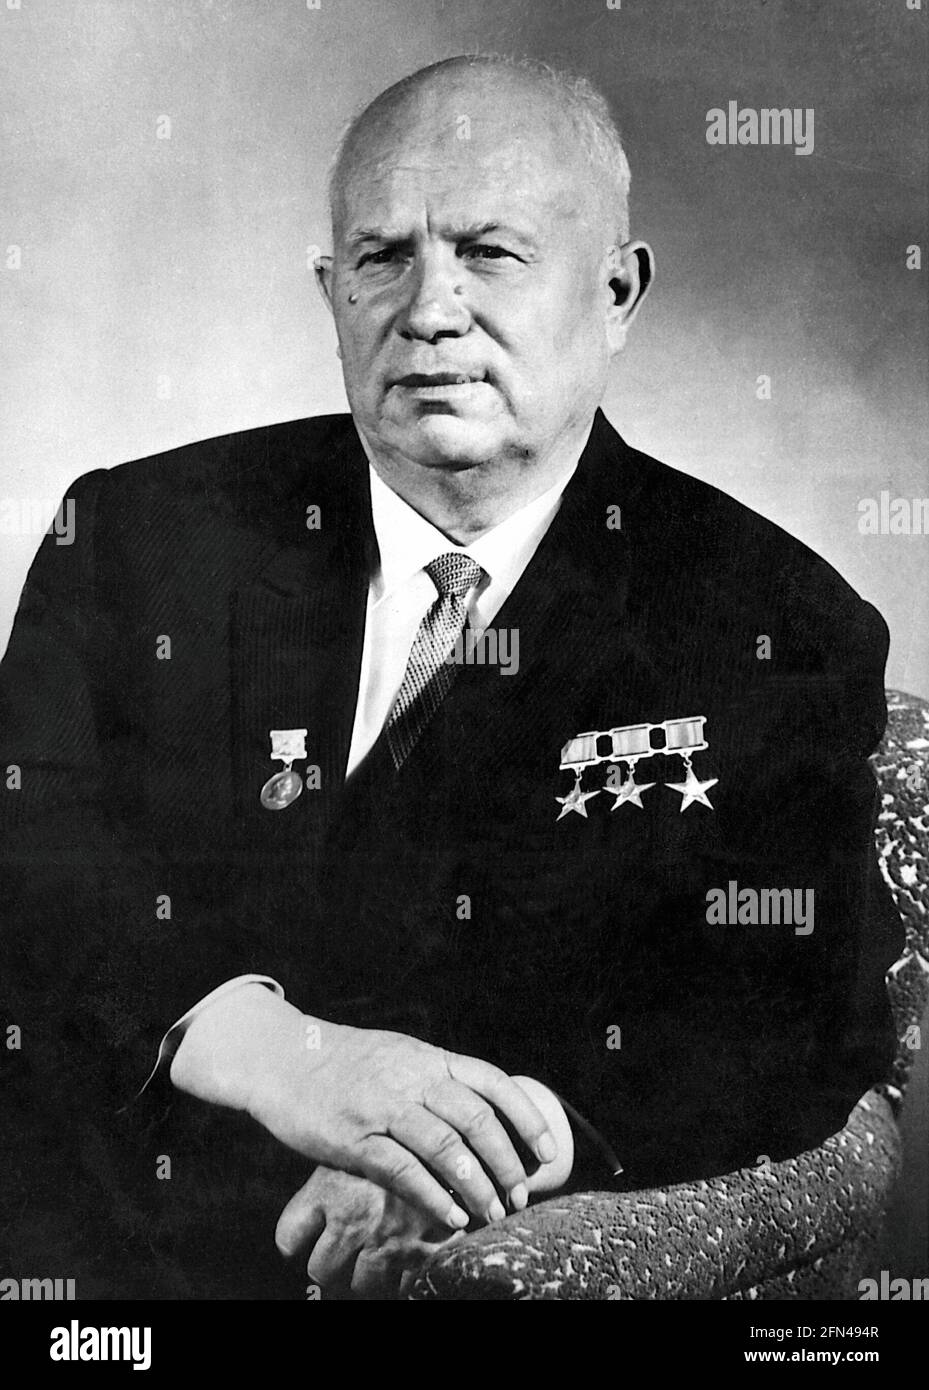 Khrouchtchev, Nikita, 17.8.1894 - 11.9.1971, politicien soviétique, INFO-AUTORISATION-DROITS-SUPPLÉMENTAIRES-NON-DISPONIBLE Banque D'Images